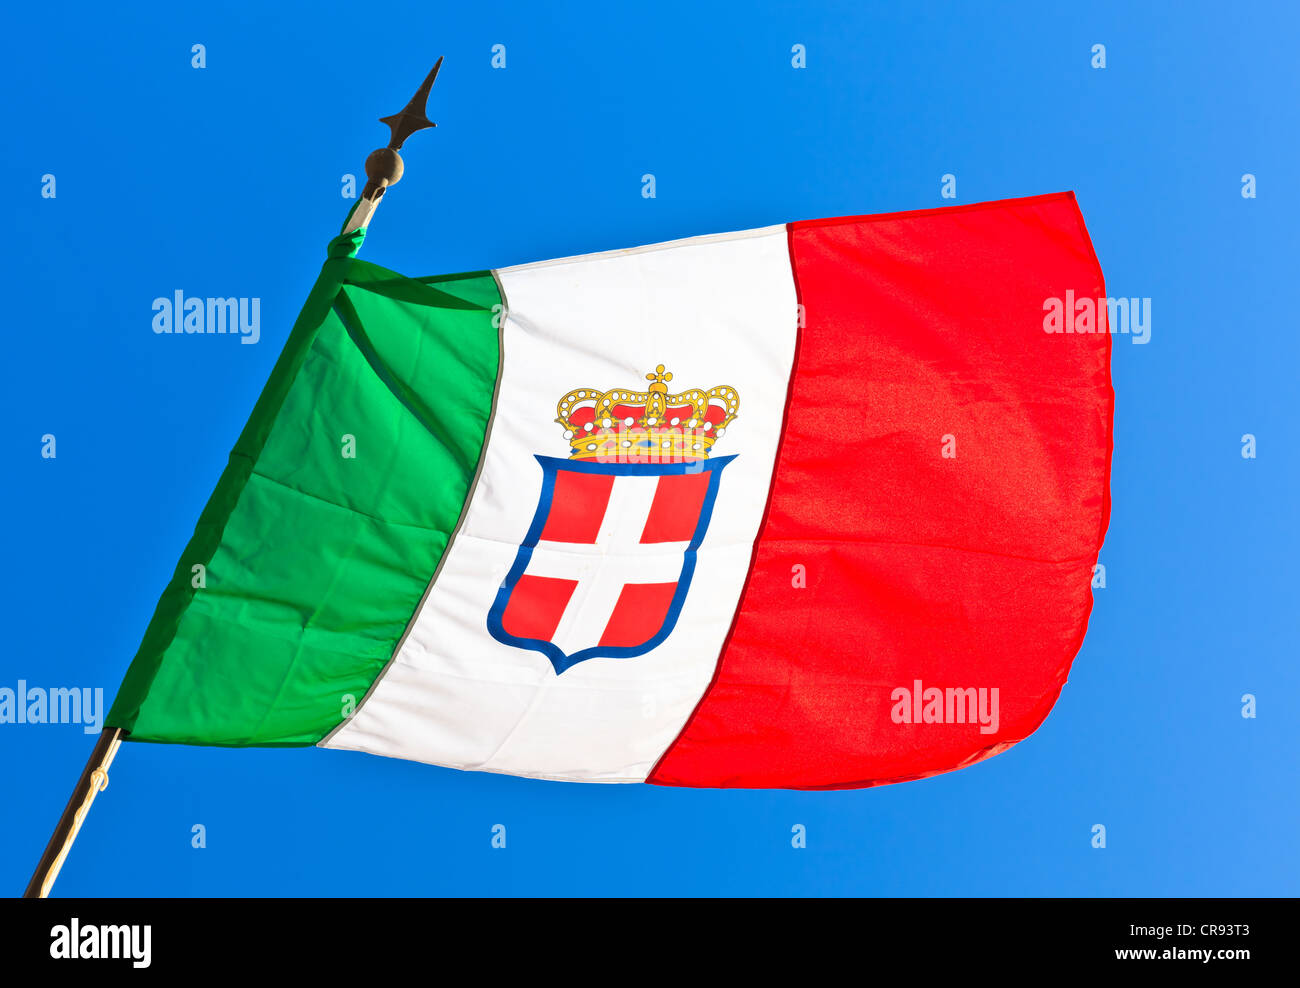 Flagge  Fahne Italien Königreich Armee 1861-1946 günstig kaufen